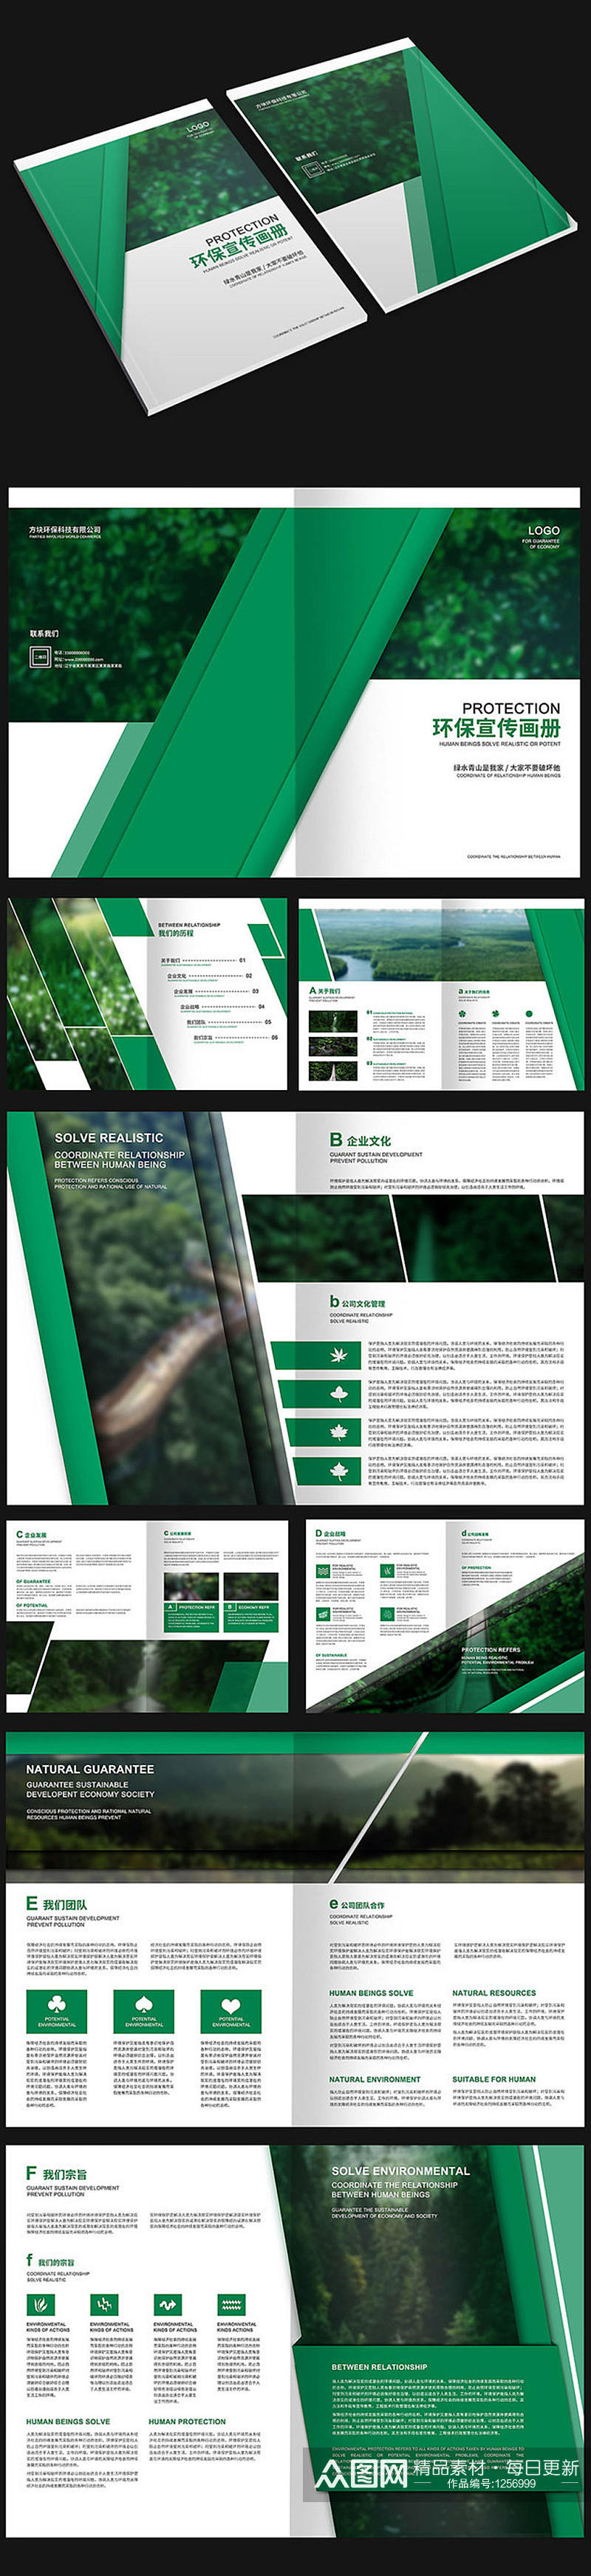 绿色自然环保画册设计素材